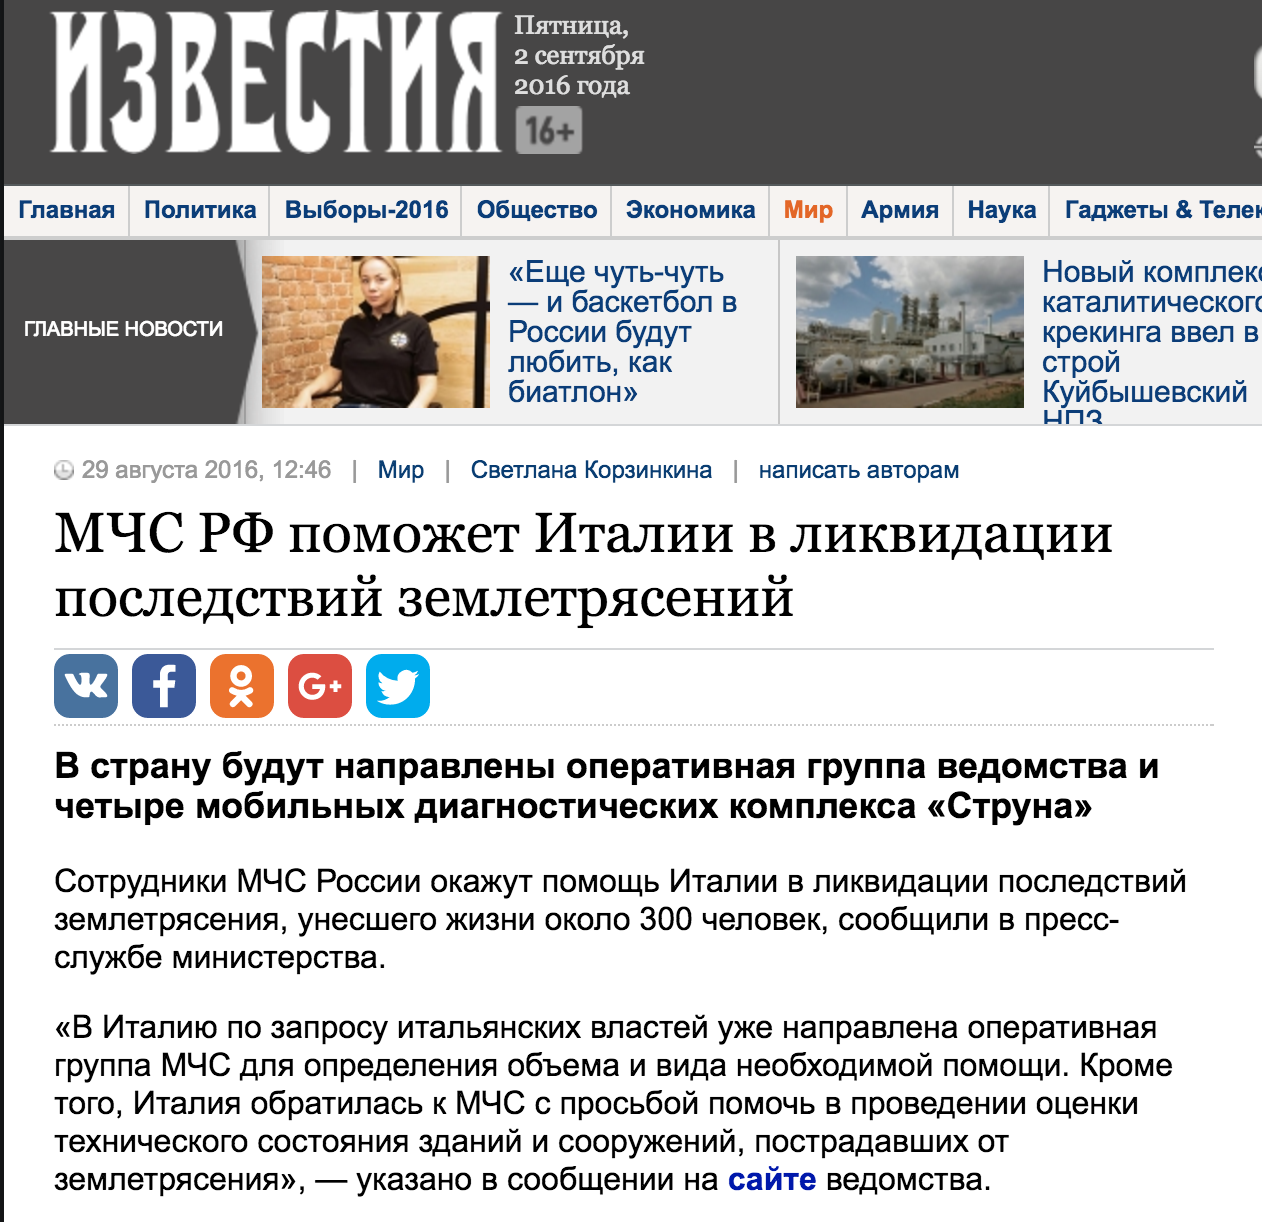 Screenshot de pe site-ul izvestia.ru